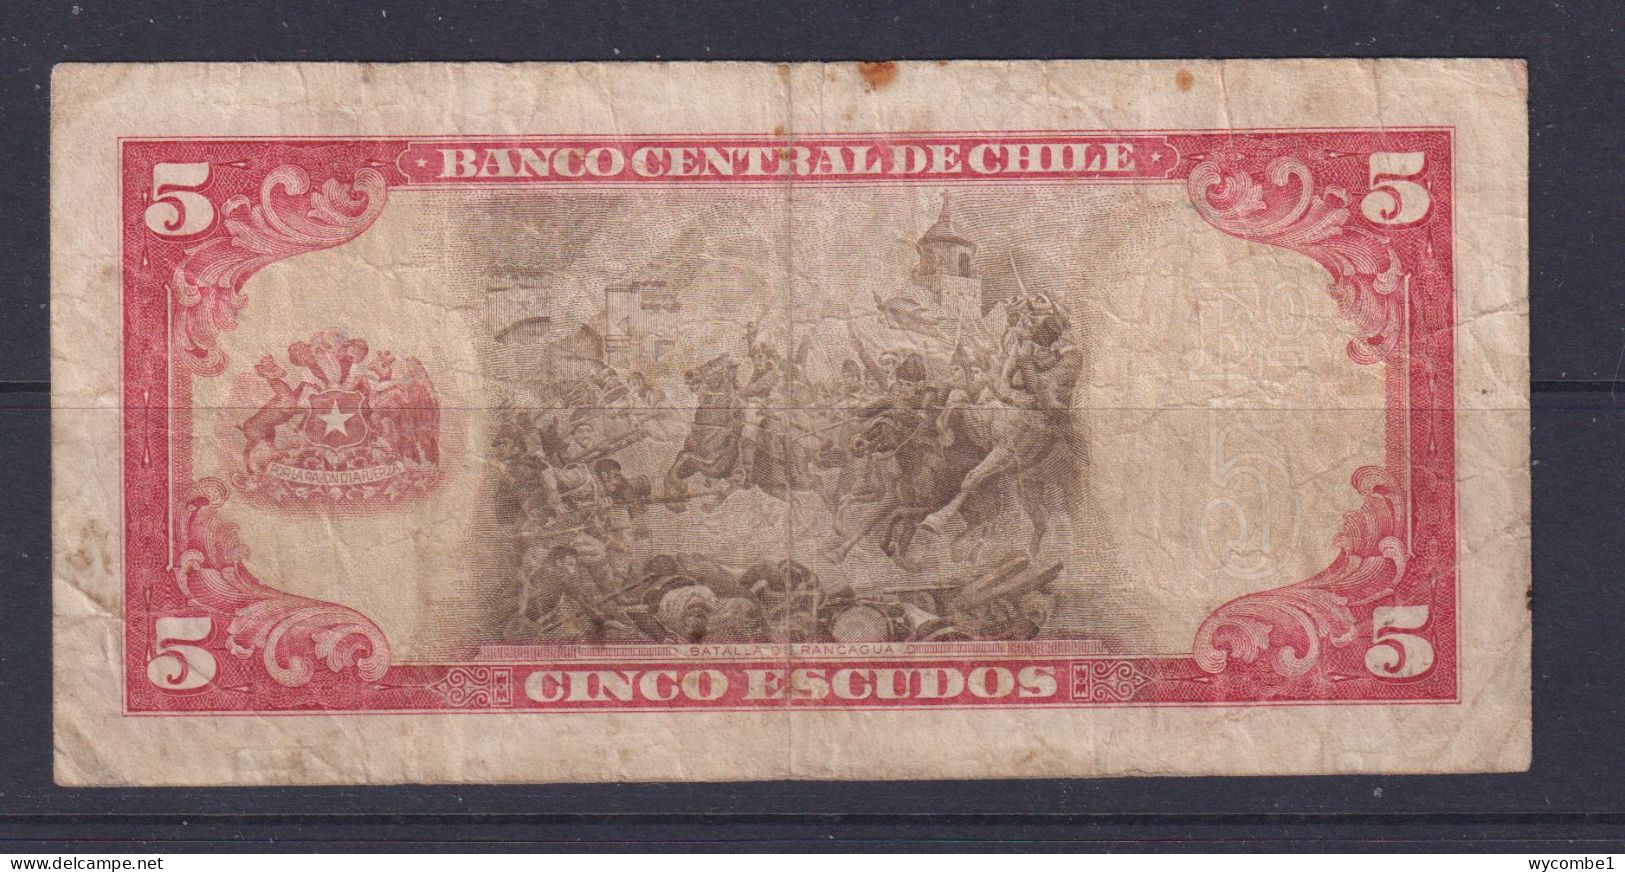 CHILE - 1964 5 Escudos Circulated Banknote - Chile